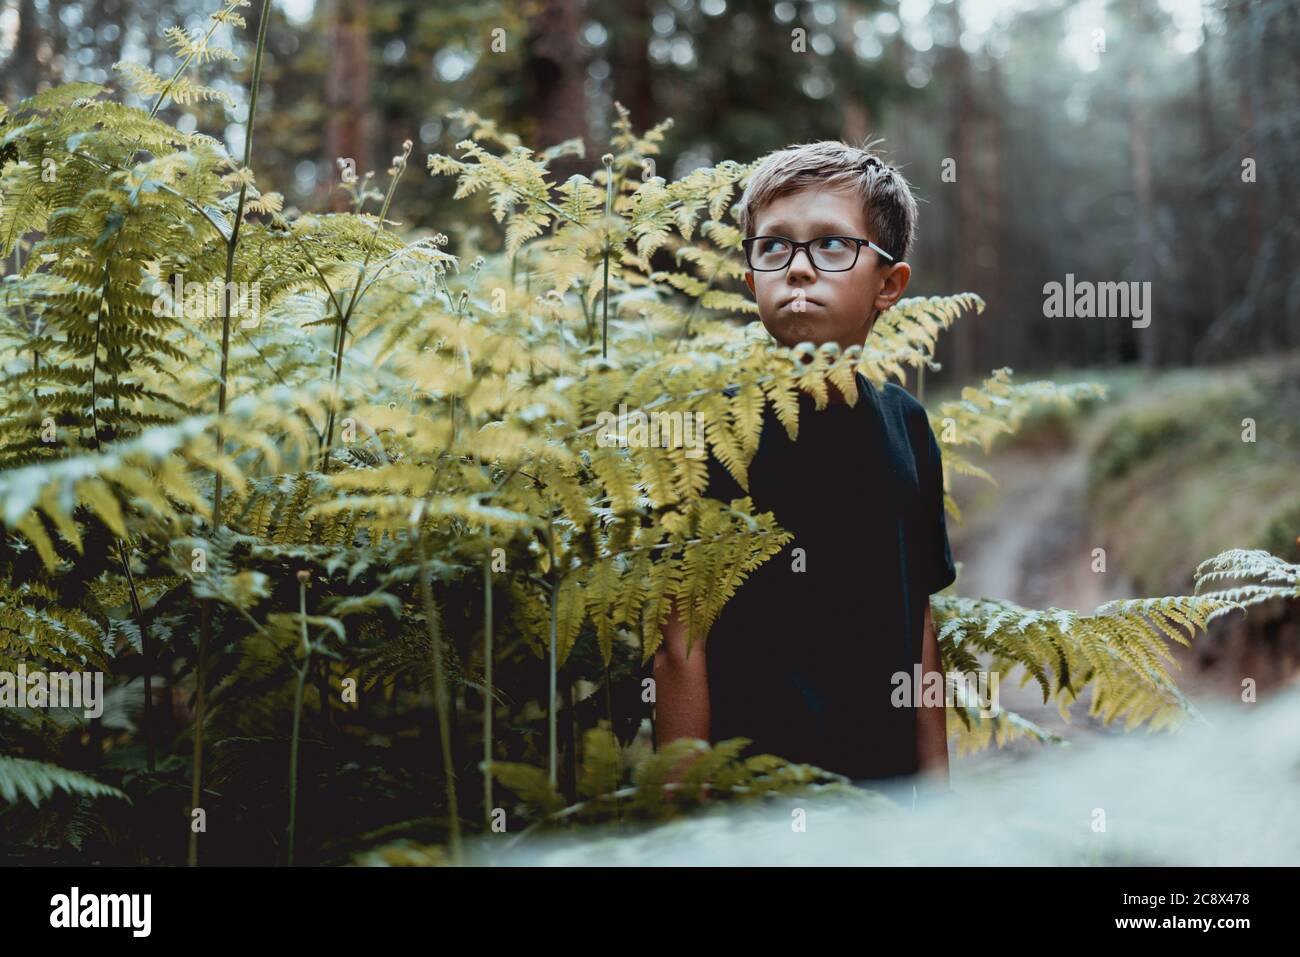 Retrato de un joven adolescente en el bosque. Foto de stock